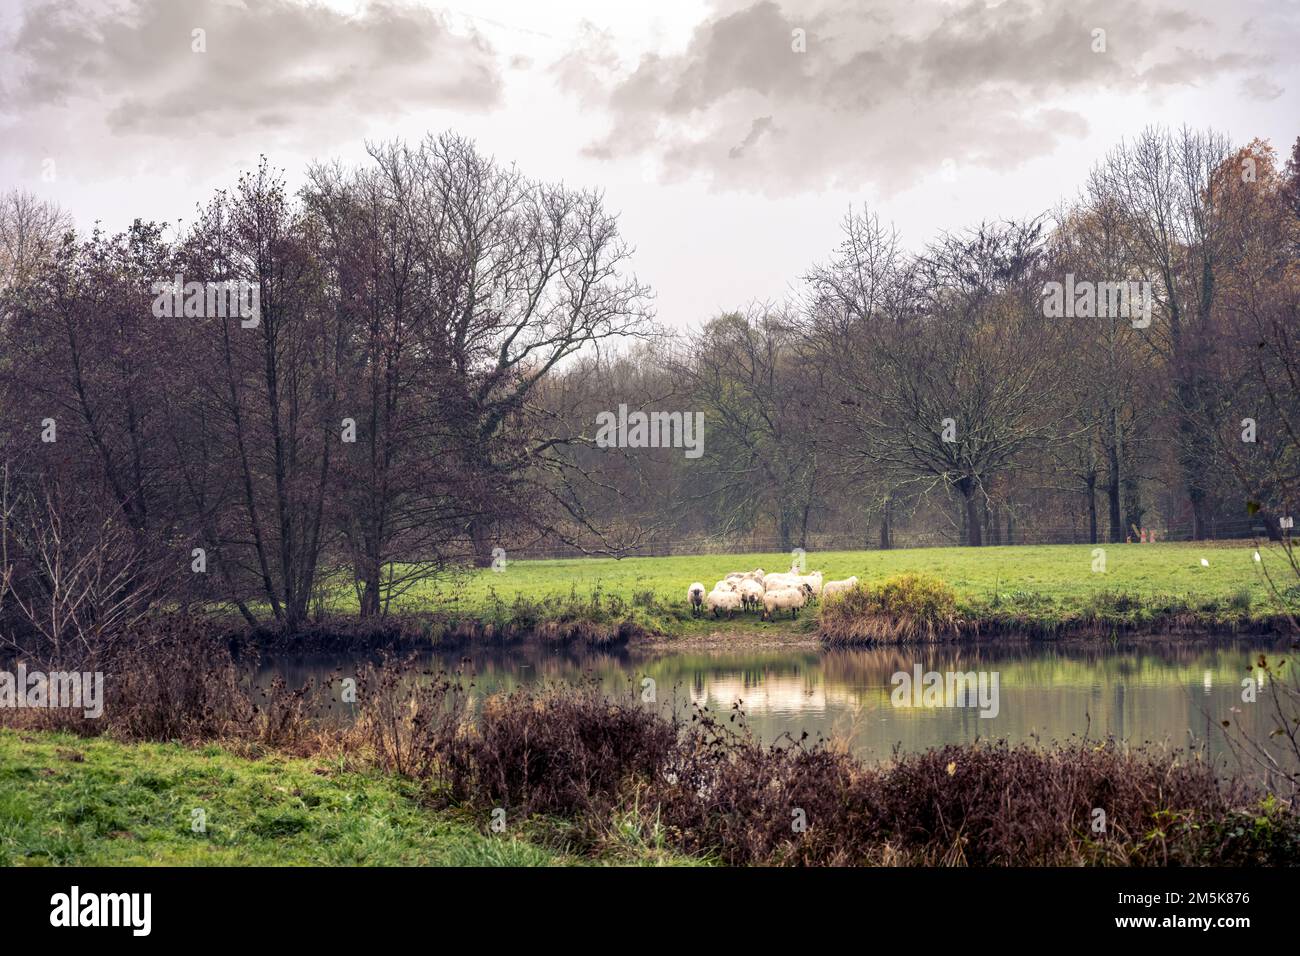 Gregge di pecore in un campo vicino ad un lago in autunno in una giornata nuvolosa Foto Stock